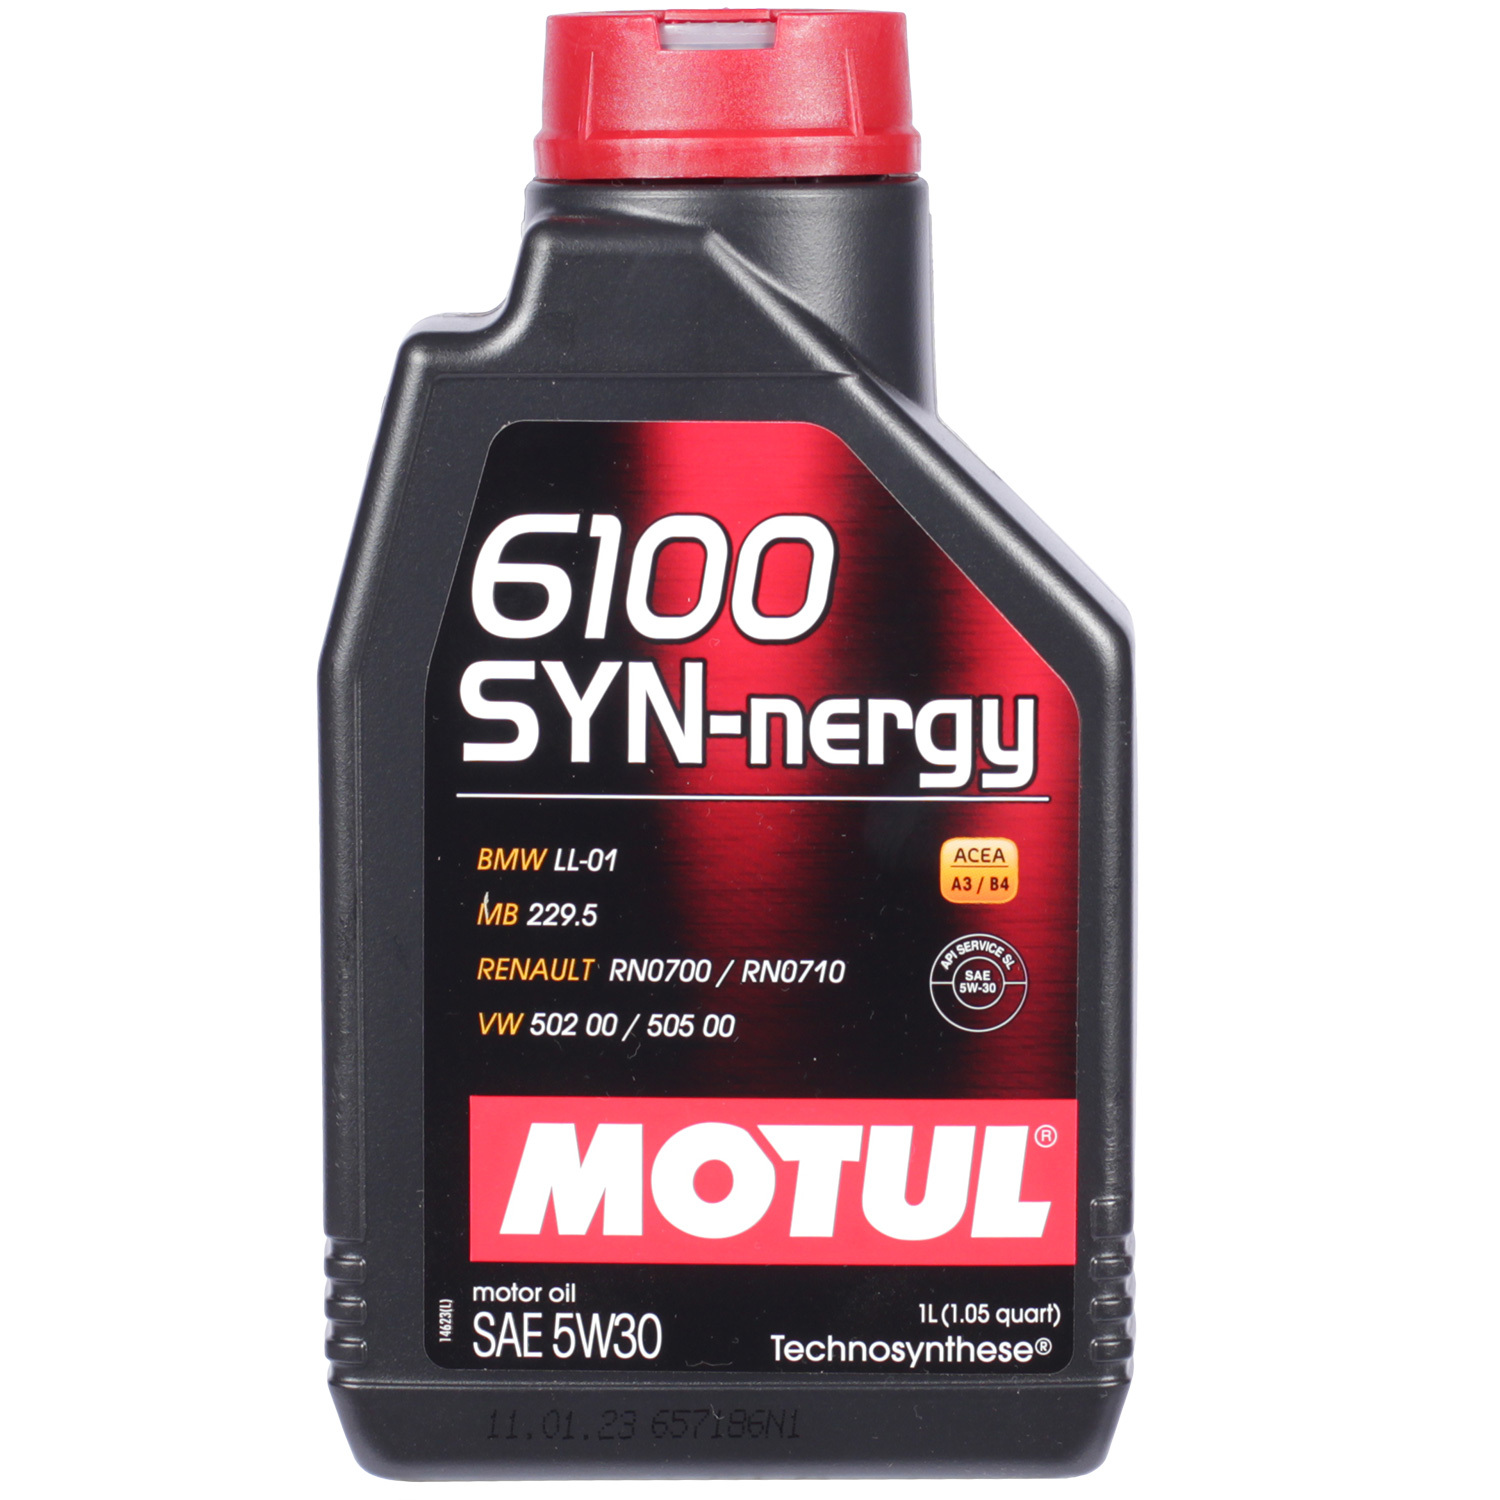 Motul Моторное масло Motul 6100 SYN-NERGY 5W-30, 1 л motul моторное масло motul 6100 save nergy 5w 30 4 л